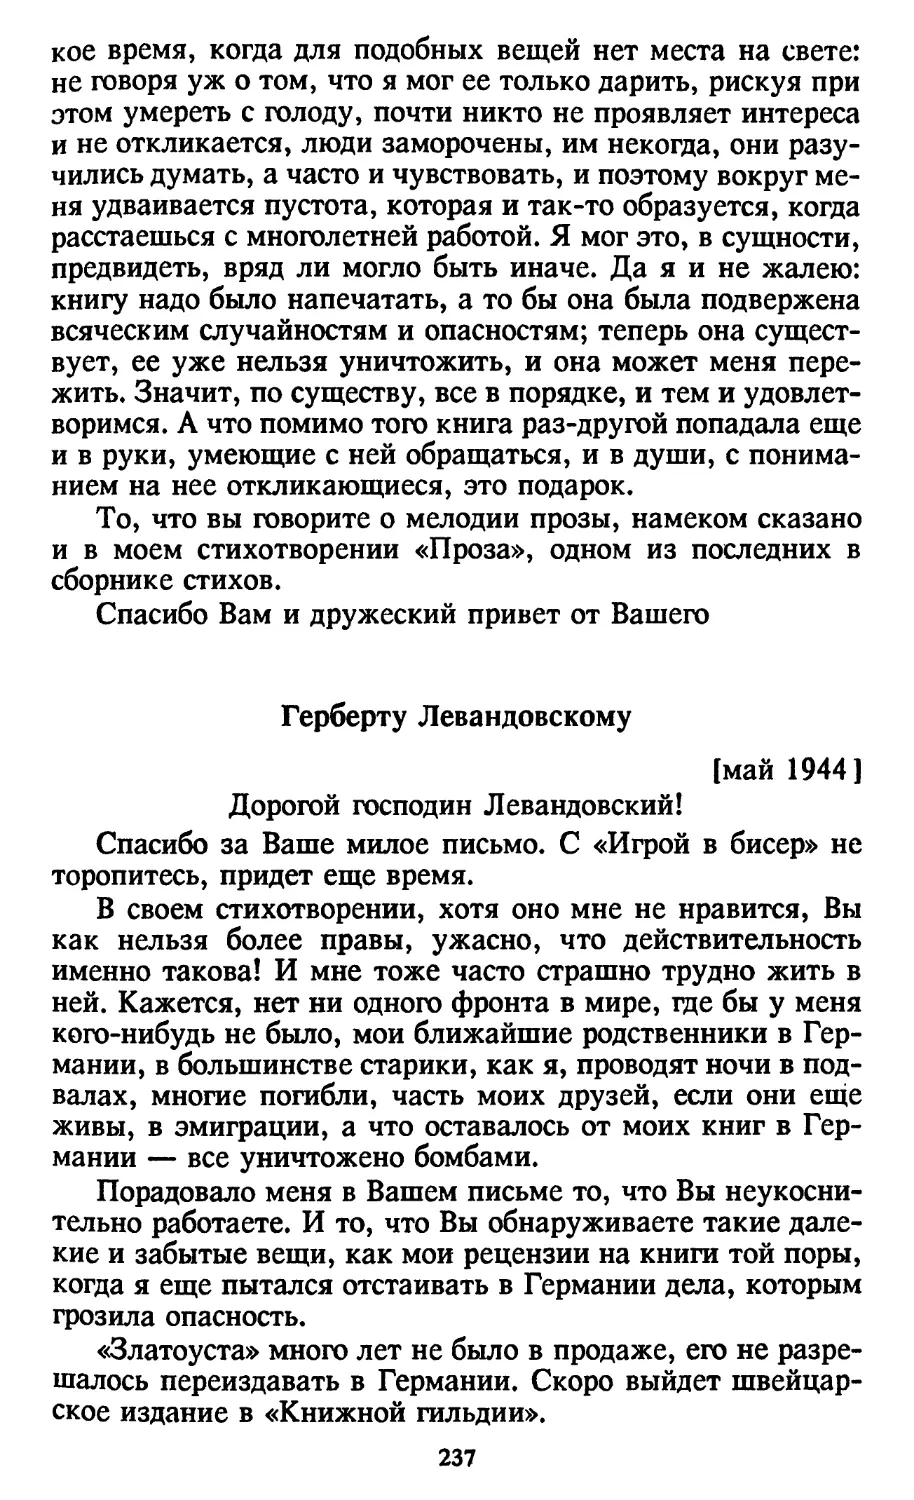 Герберту Левандовскому [май 1944]